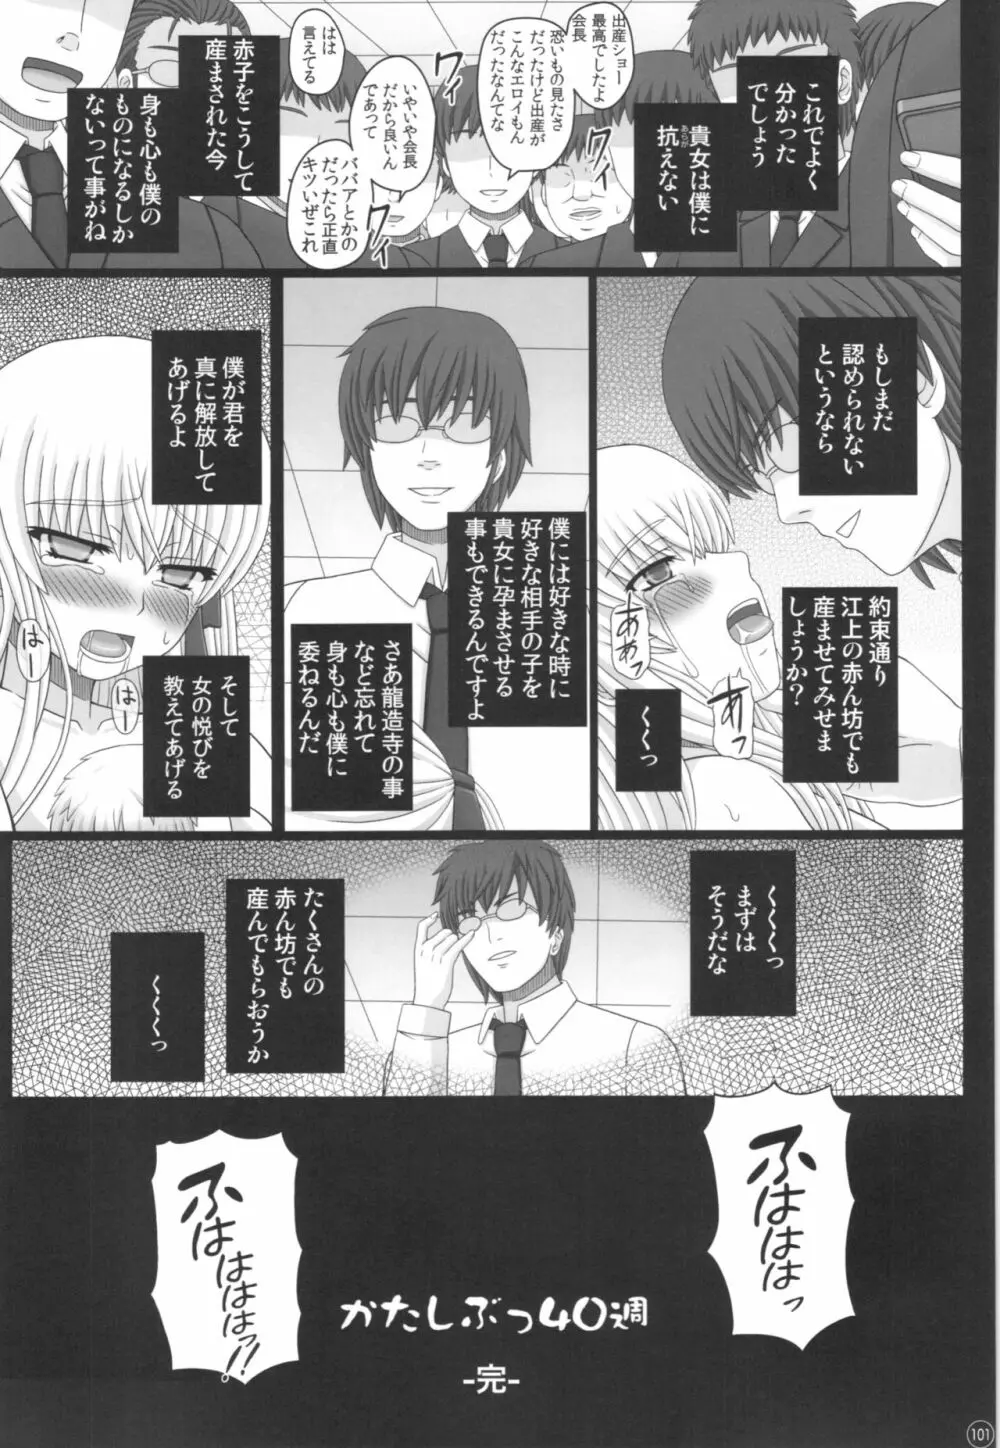 Katashibu 40-shuu 101ページ